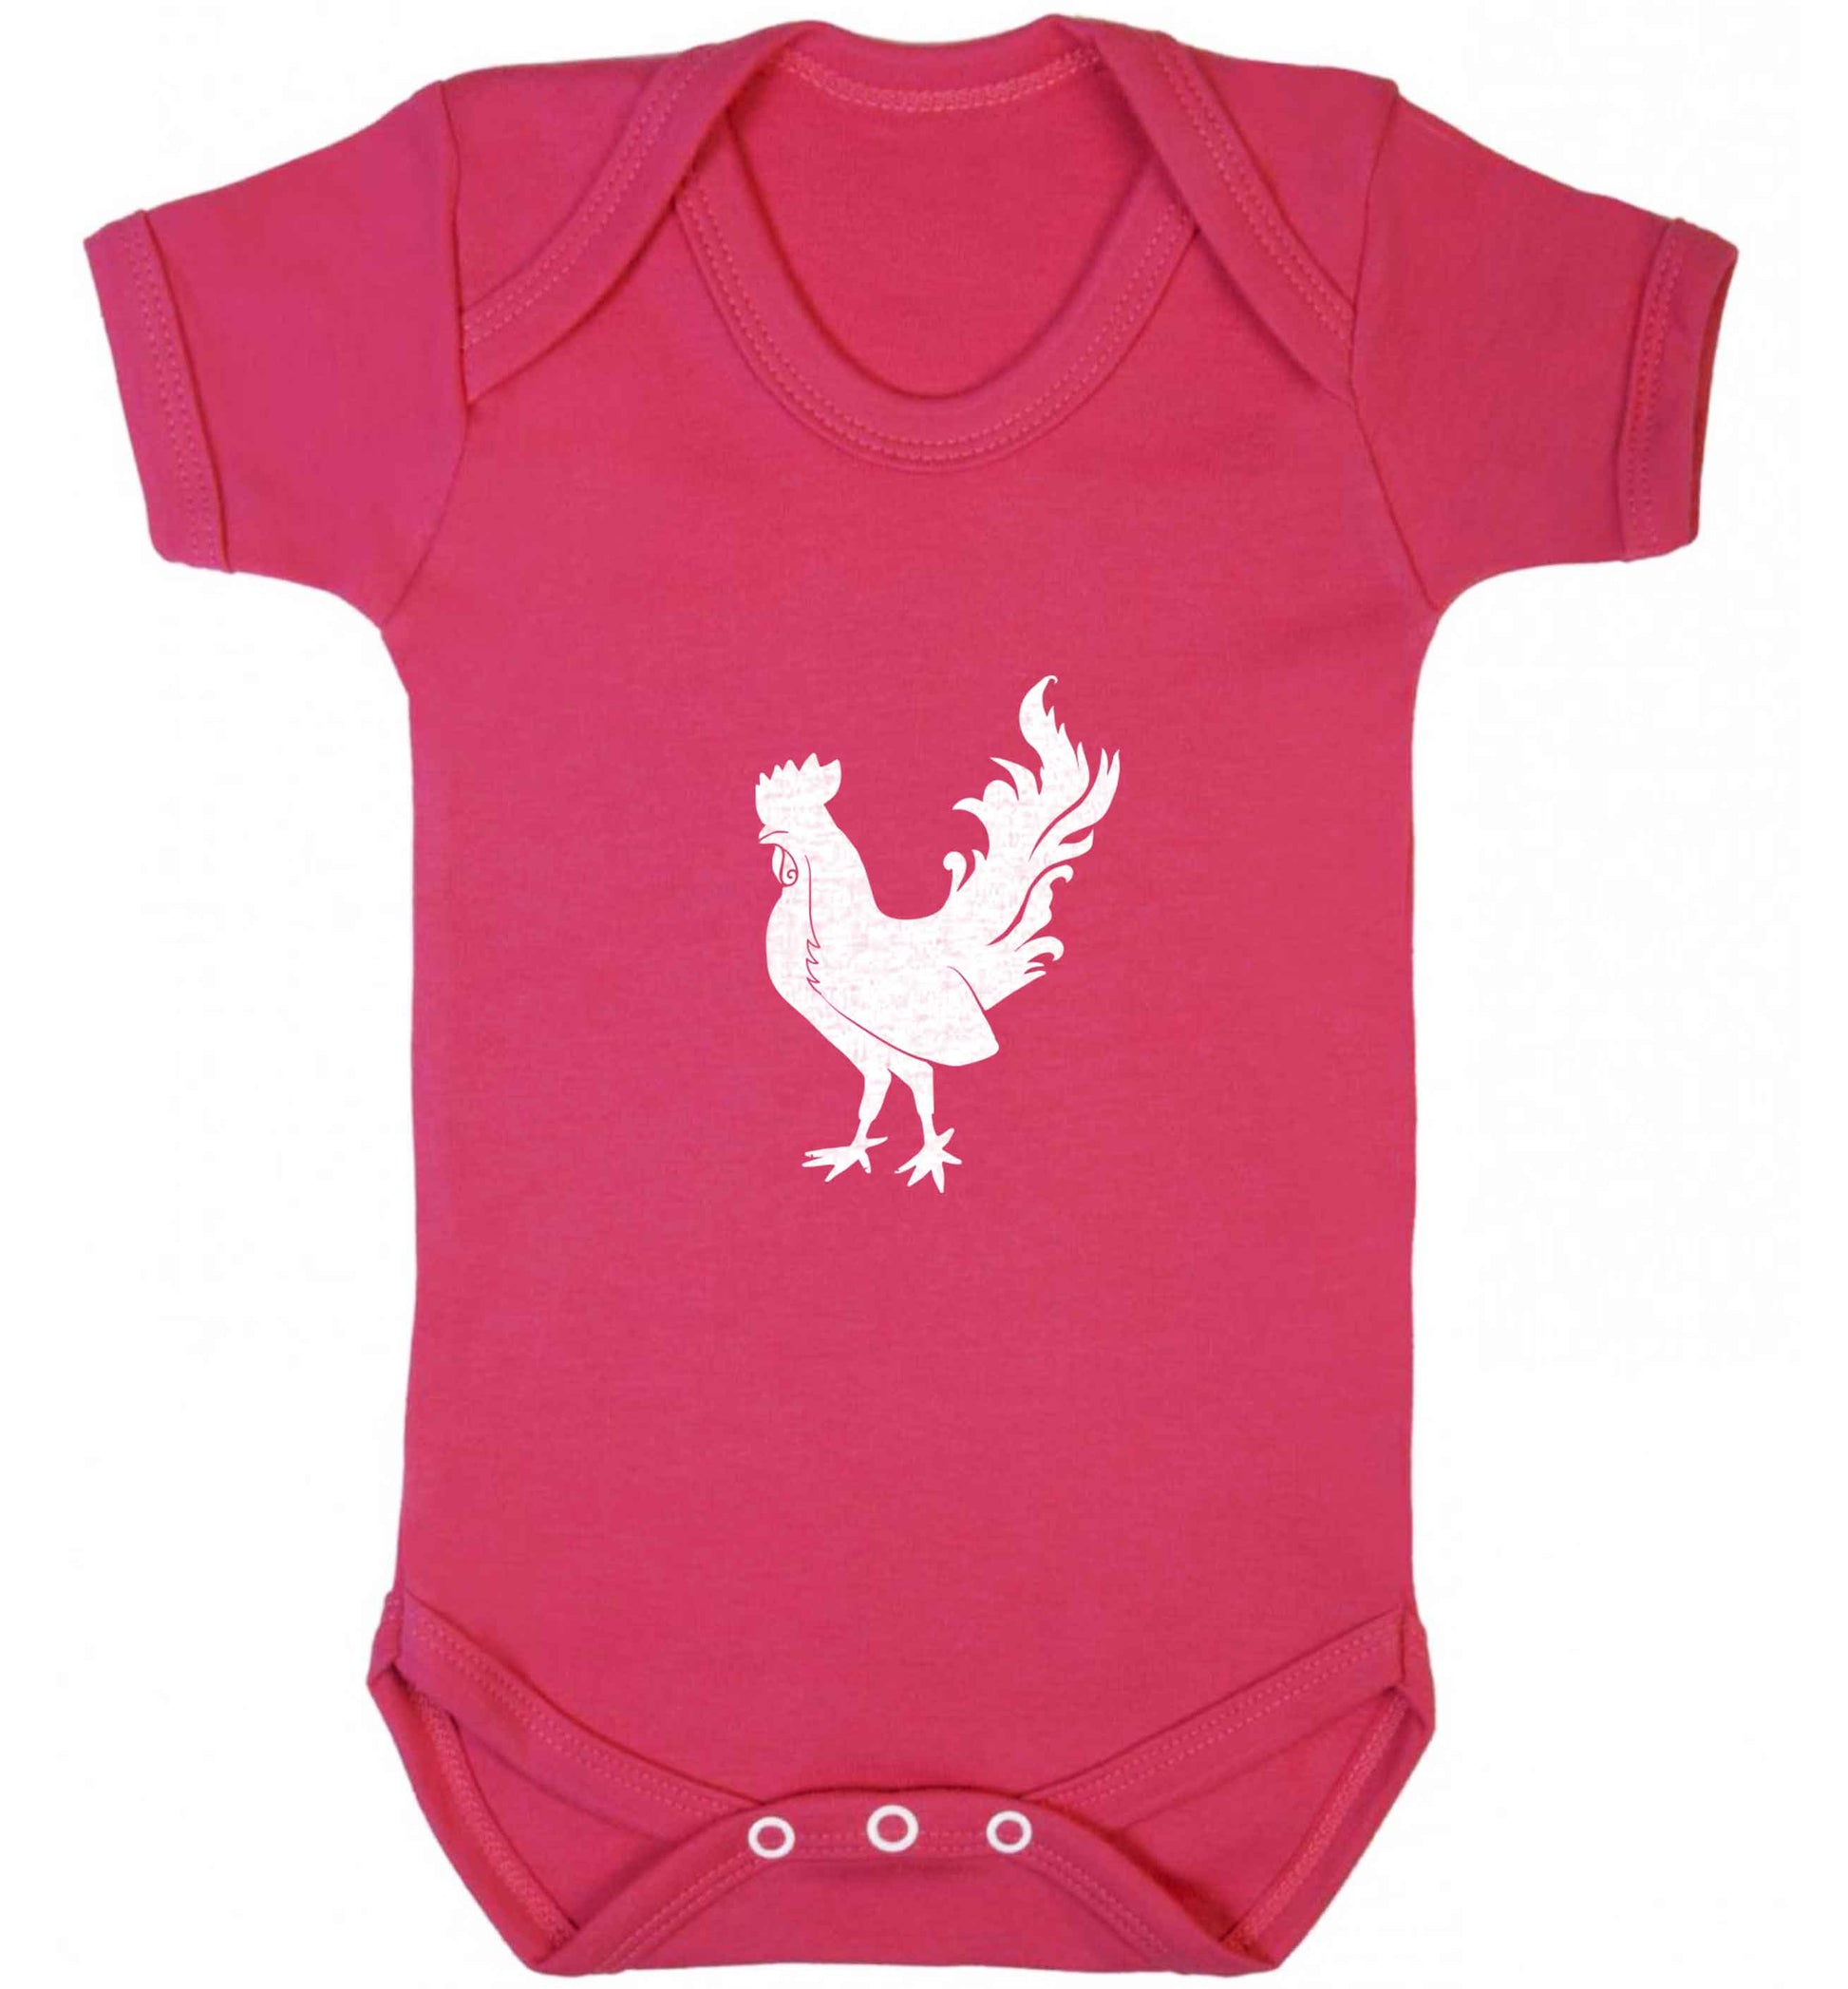 Rooster baby vest dark pink 18-24 months